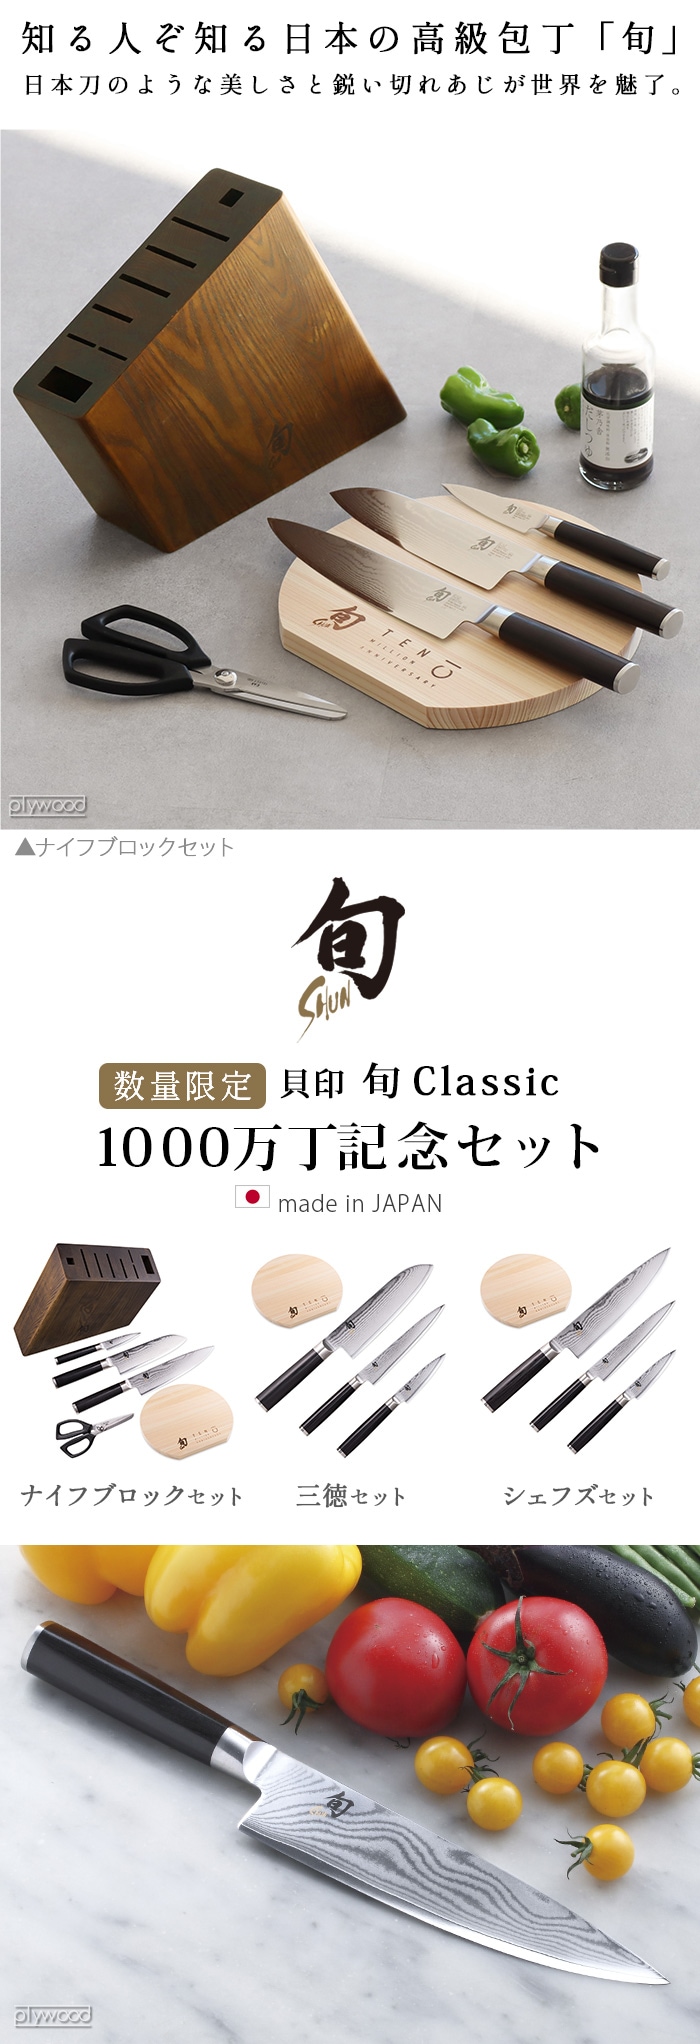 旬 Classic クラシック 1000万丁記念 ナイフブロックセット Shun Classic Knife Block Set DMB0101 |  新着 | plywood(プライウッド)